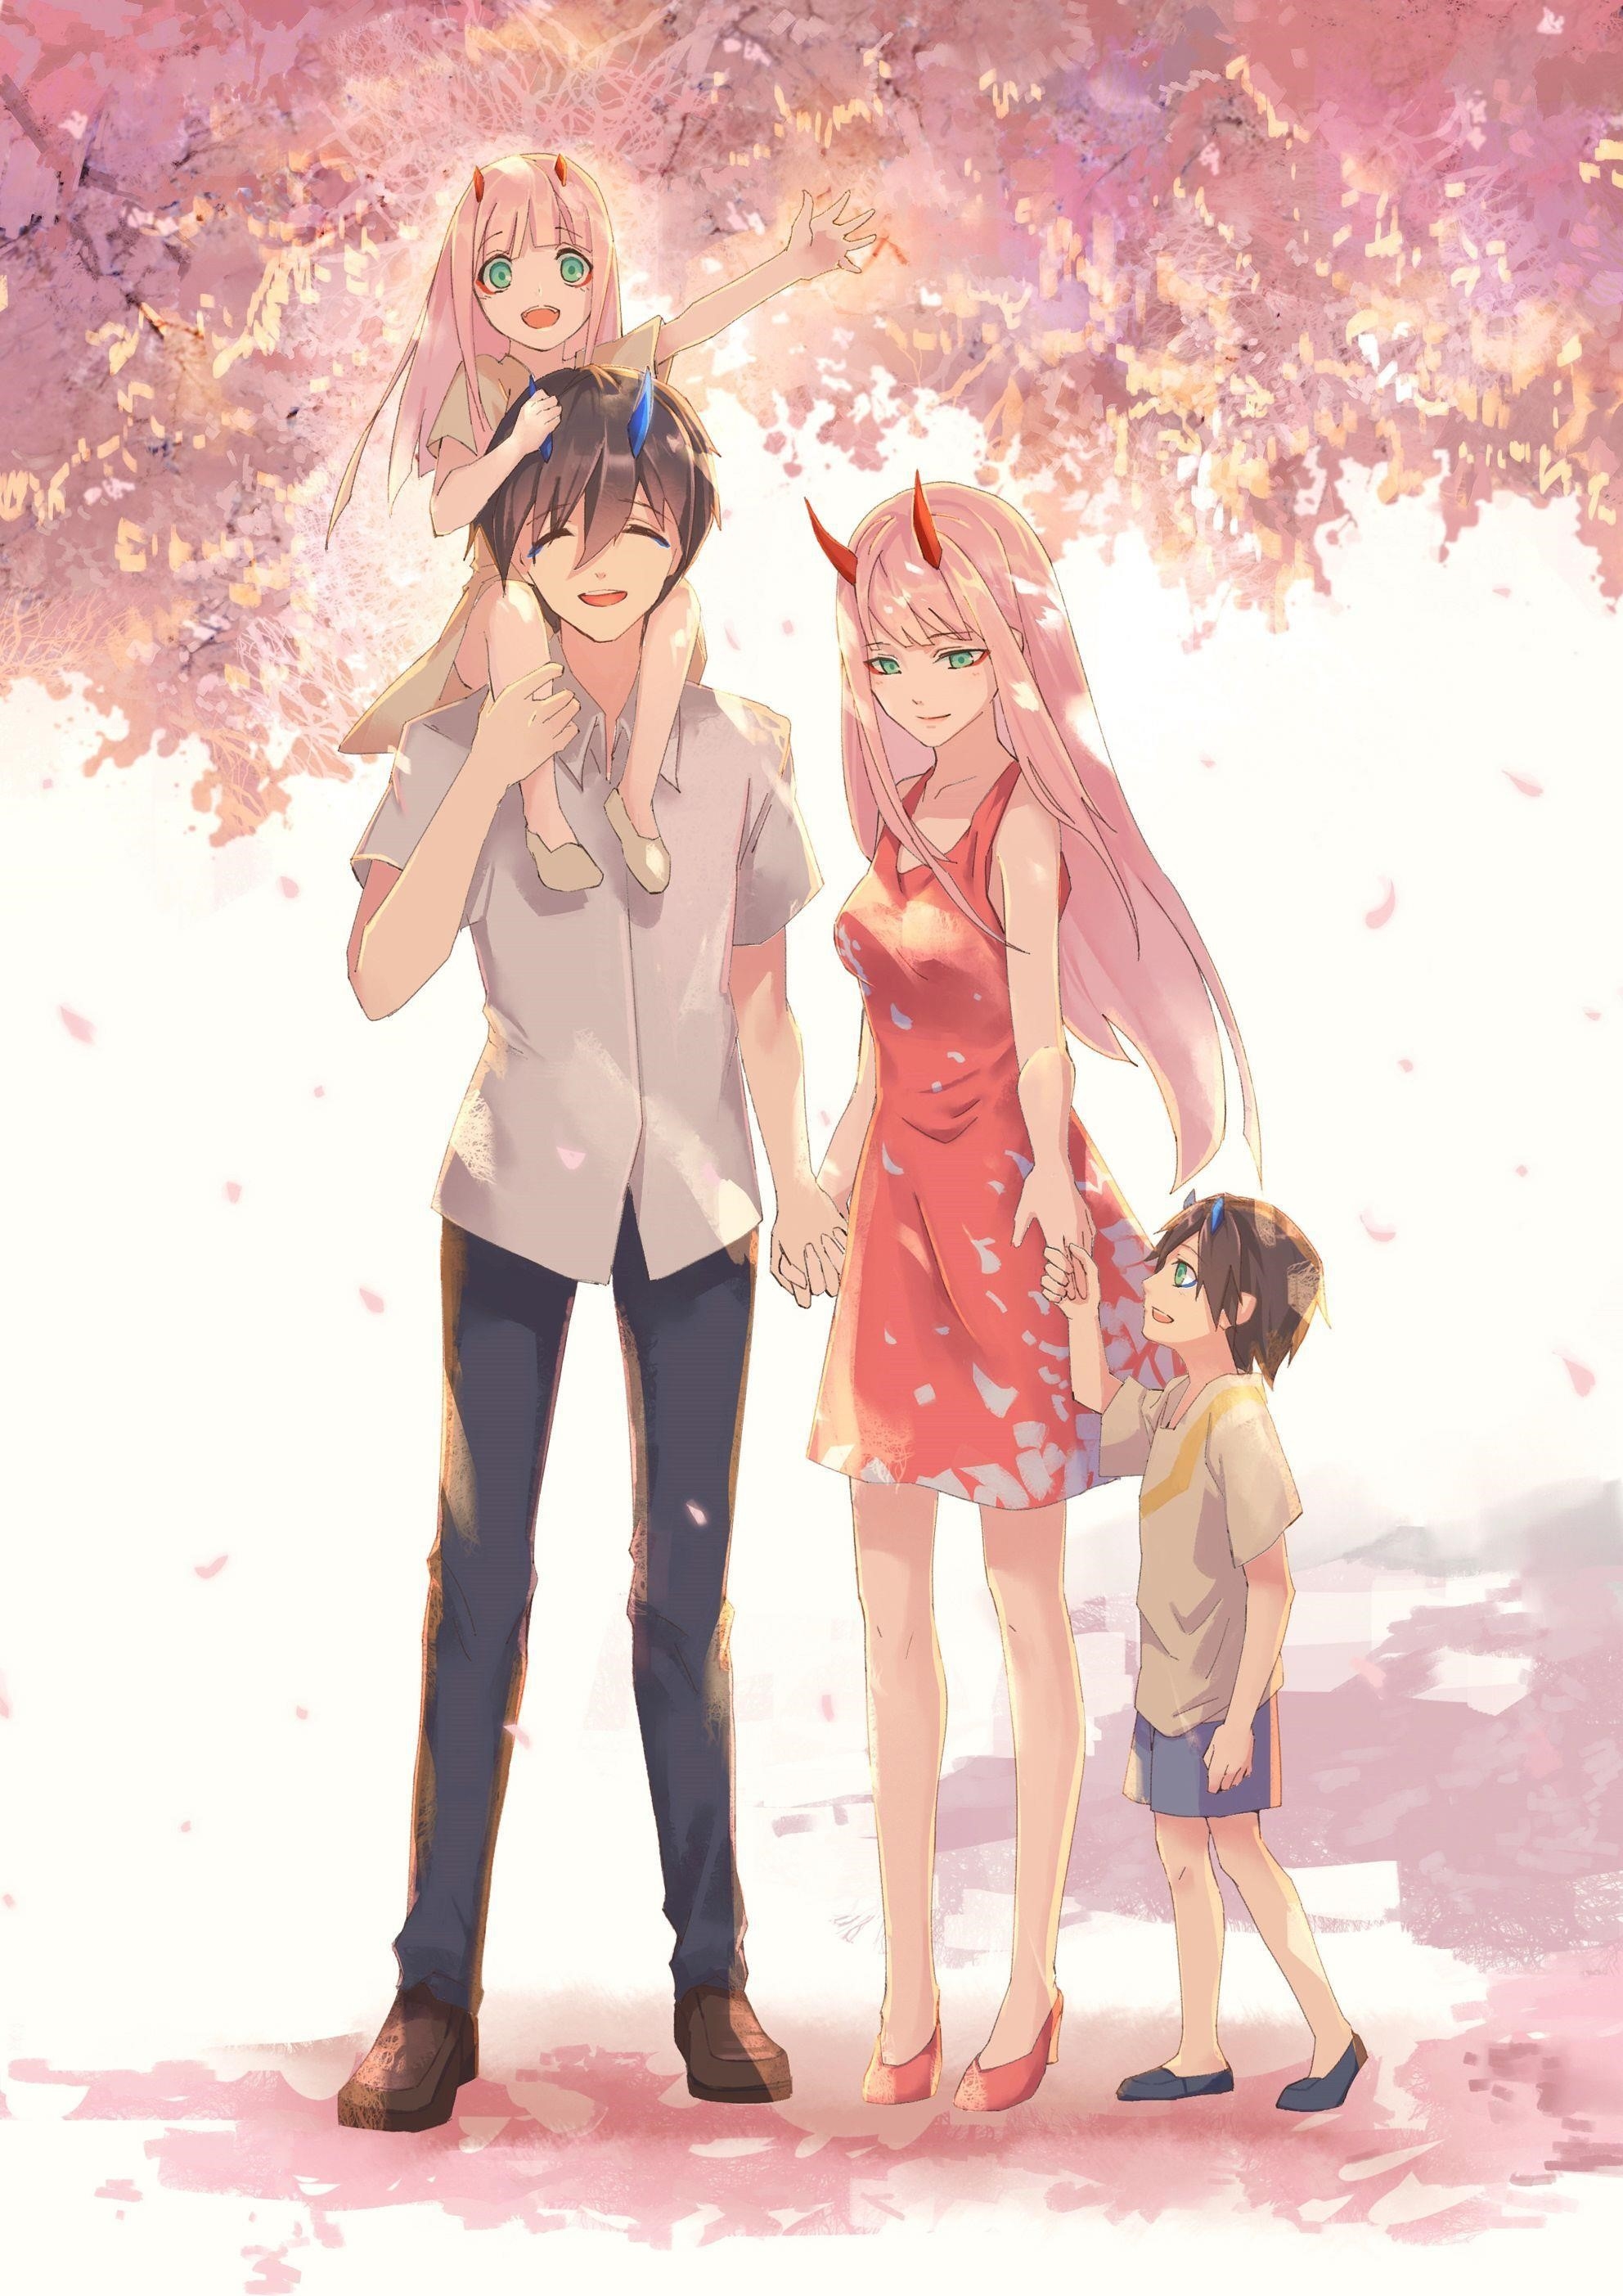 Hình ảnh cho hình ảnh của một gia đình gồm 5 người trong phong cách anime.